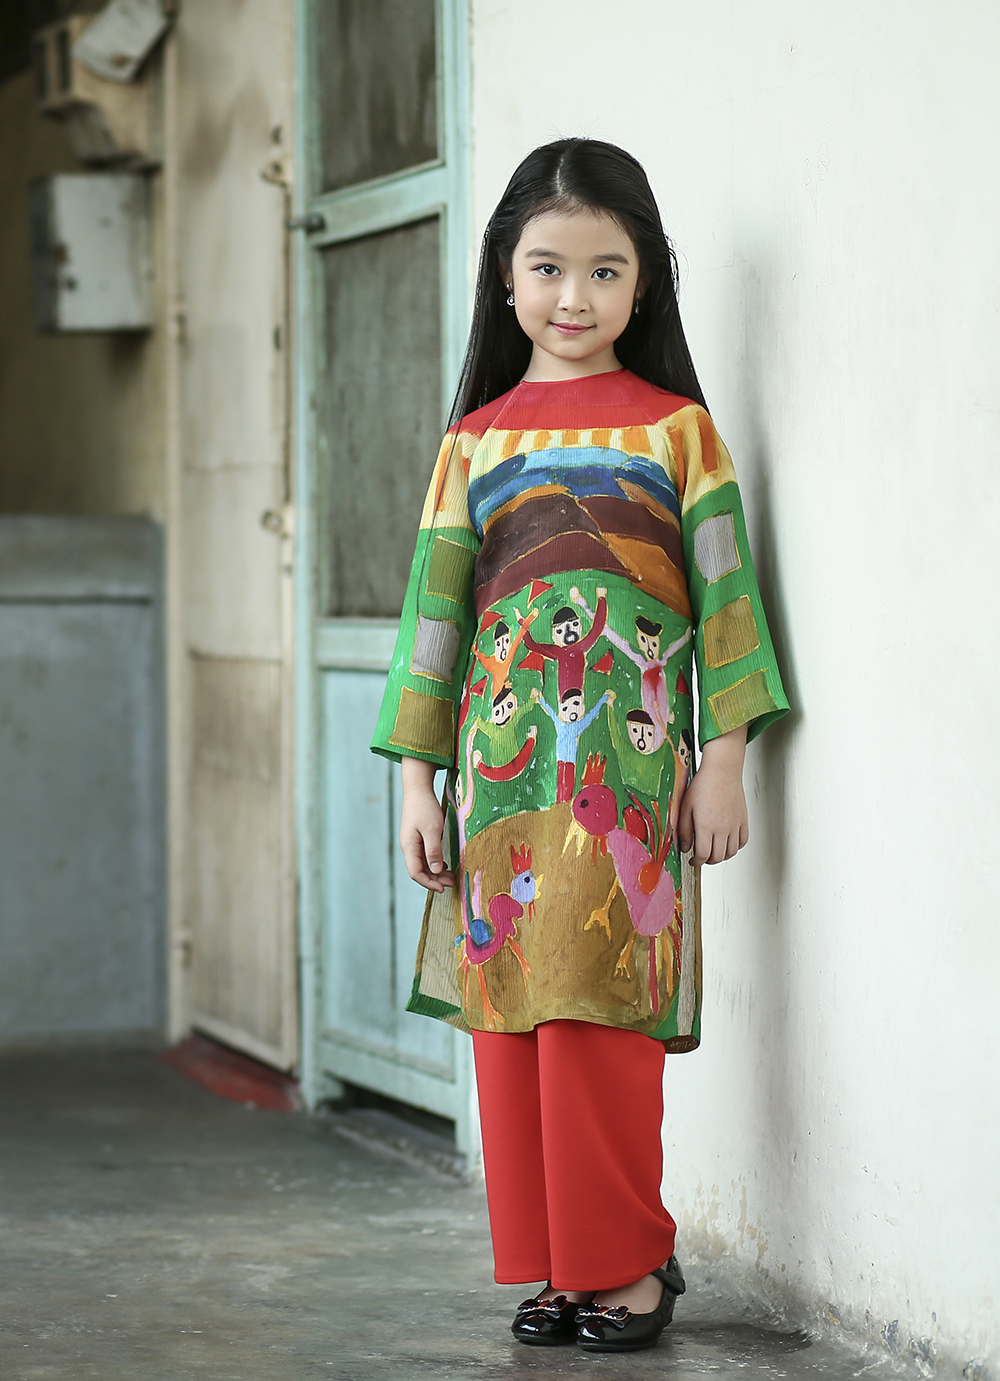 Hòa quyện giữa truyền thống và hiện đại, áo dài cách tân đem đến một vẻ đẹp đầy mới lạ và phong cách. Hãy xem hình ảnh áo dài cách tân để cảm nhận được tinh hoa của trang phục truyền thống Việt Nam được cập nhật theo xu hướng thời trang hiện đại.